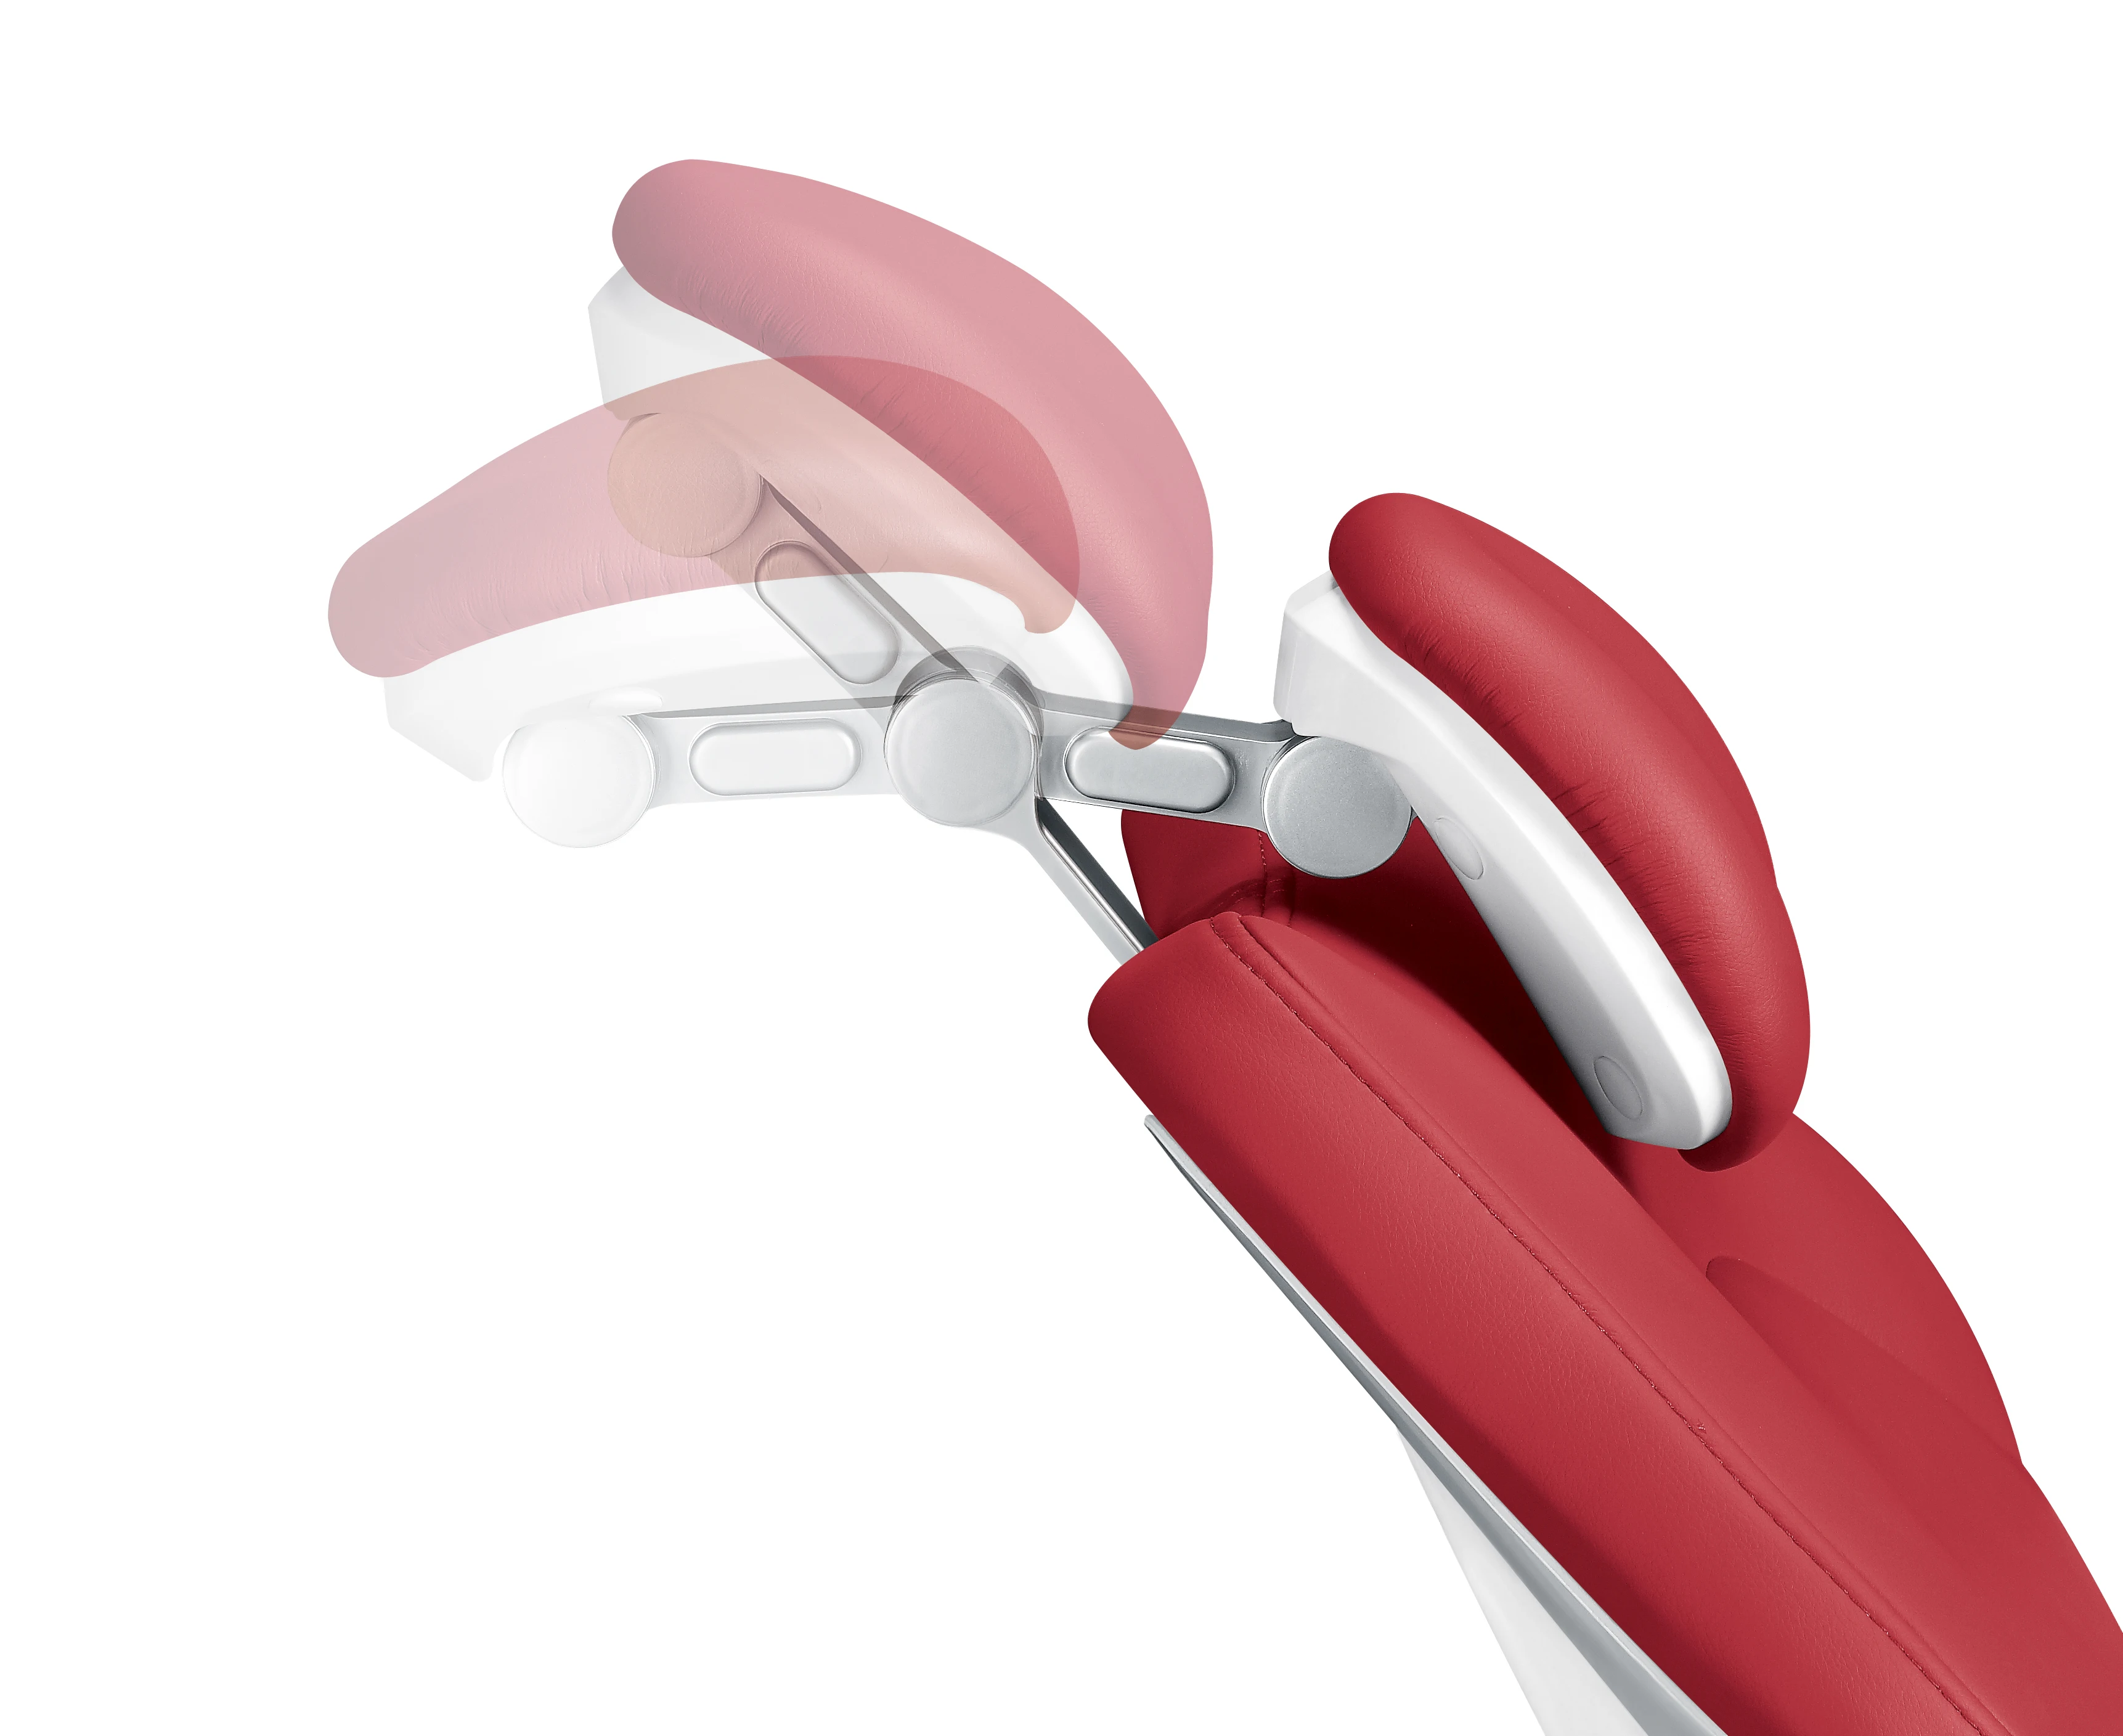 KEGON имплантант использовать медицинский помощник стул регулируемый мобильный стул стоматологический стул